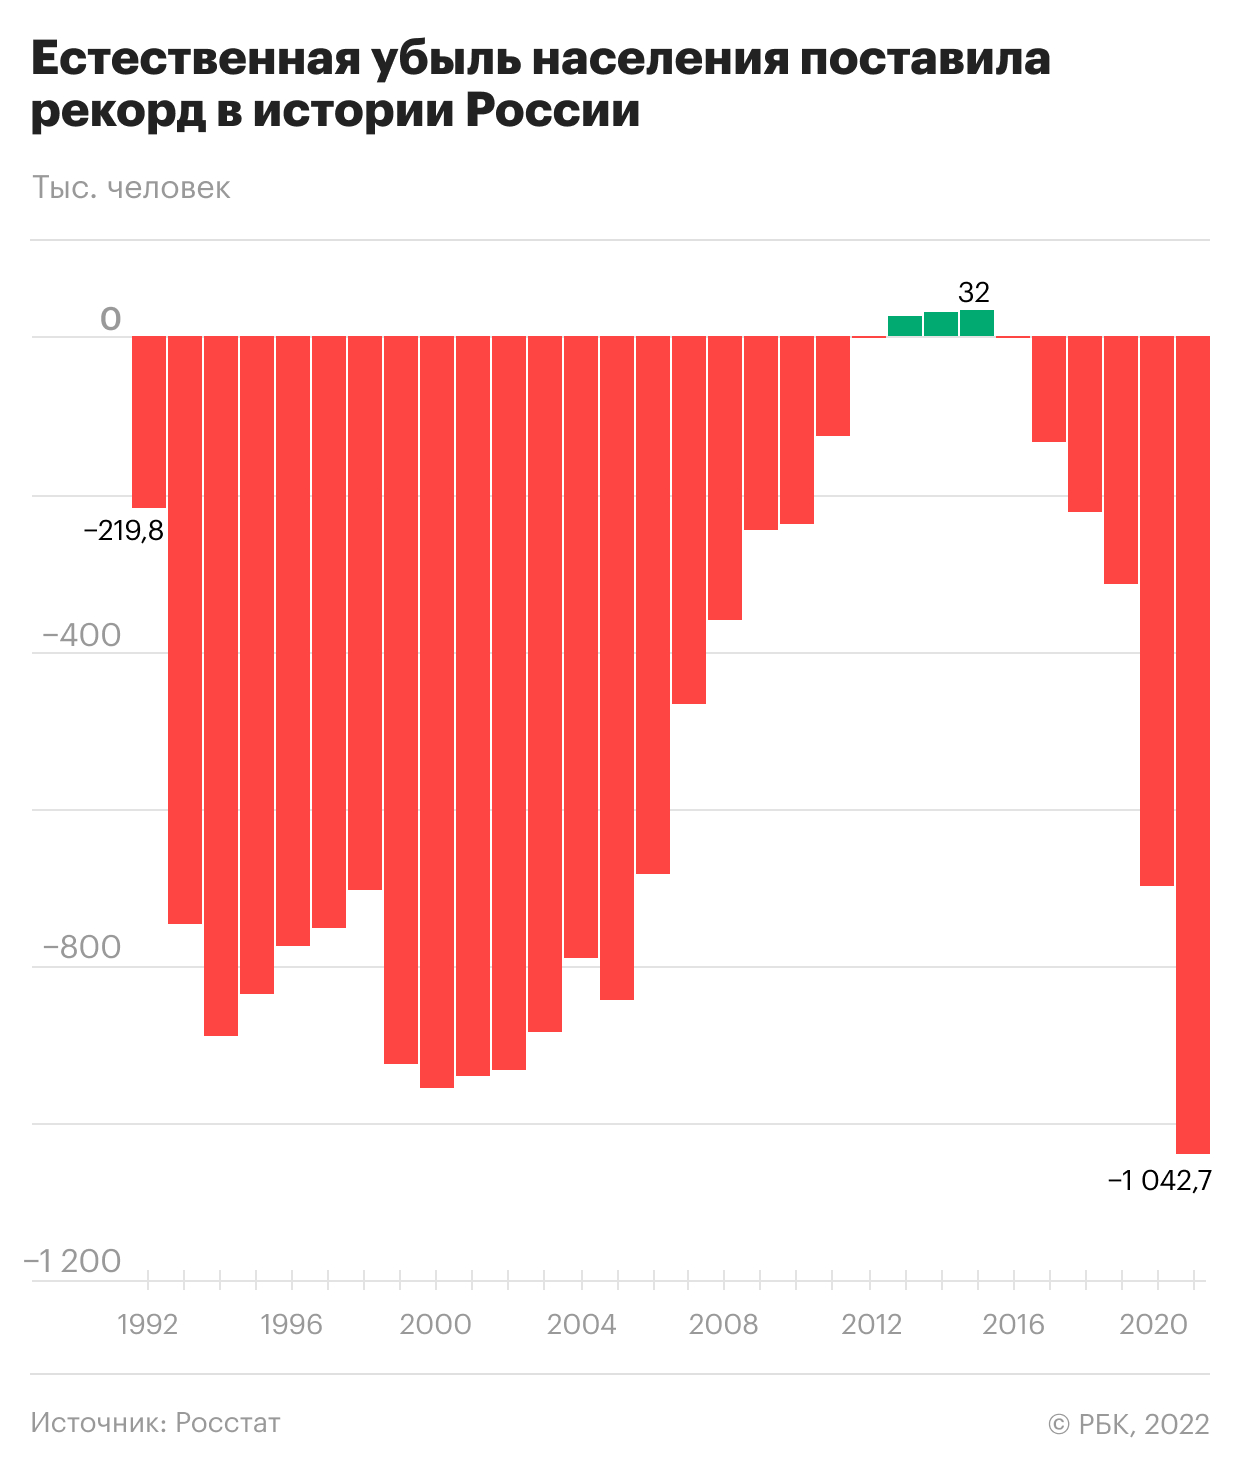 Естественная убыль населения в России за год превысила 1 млн человек